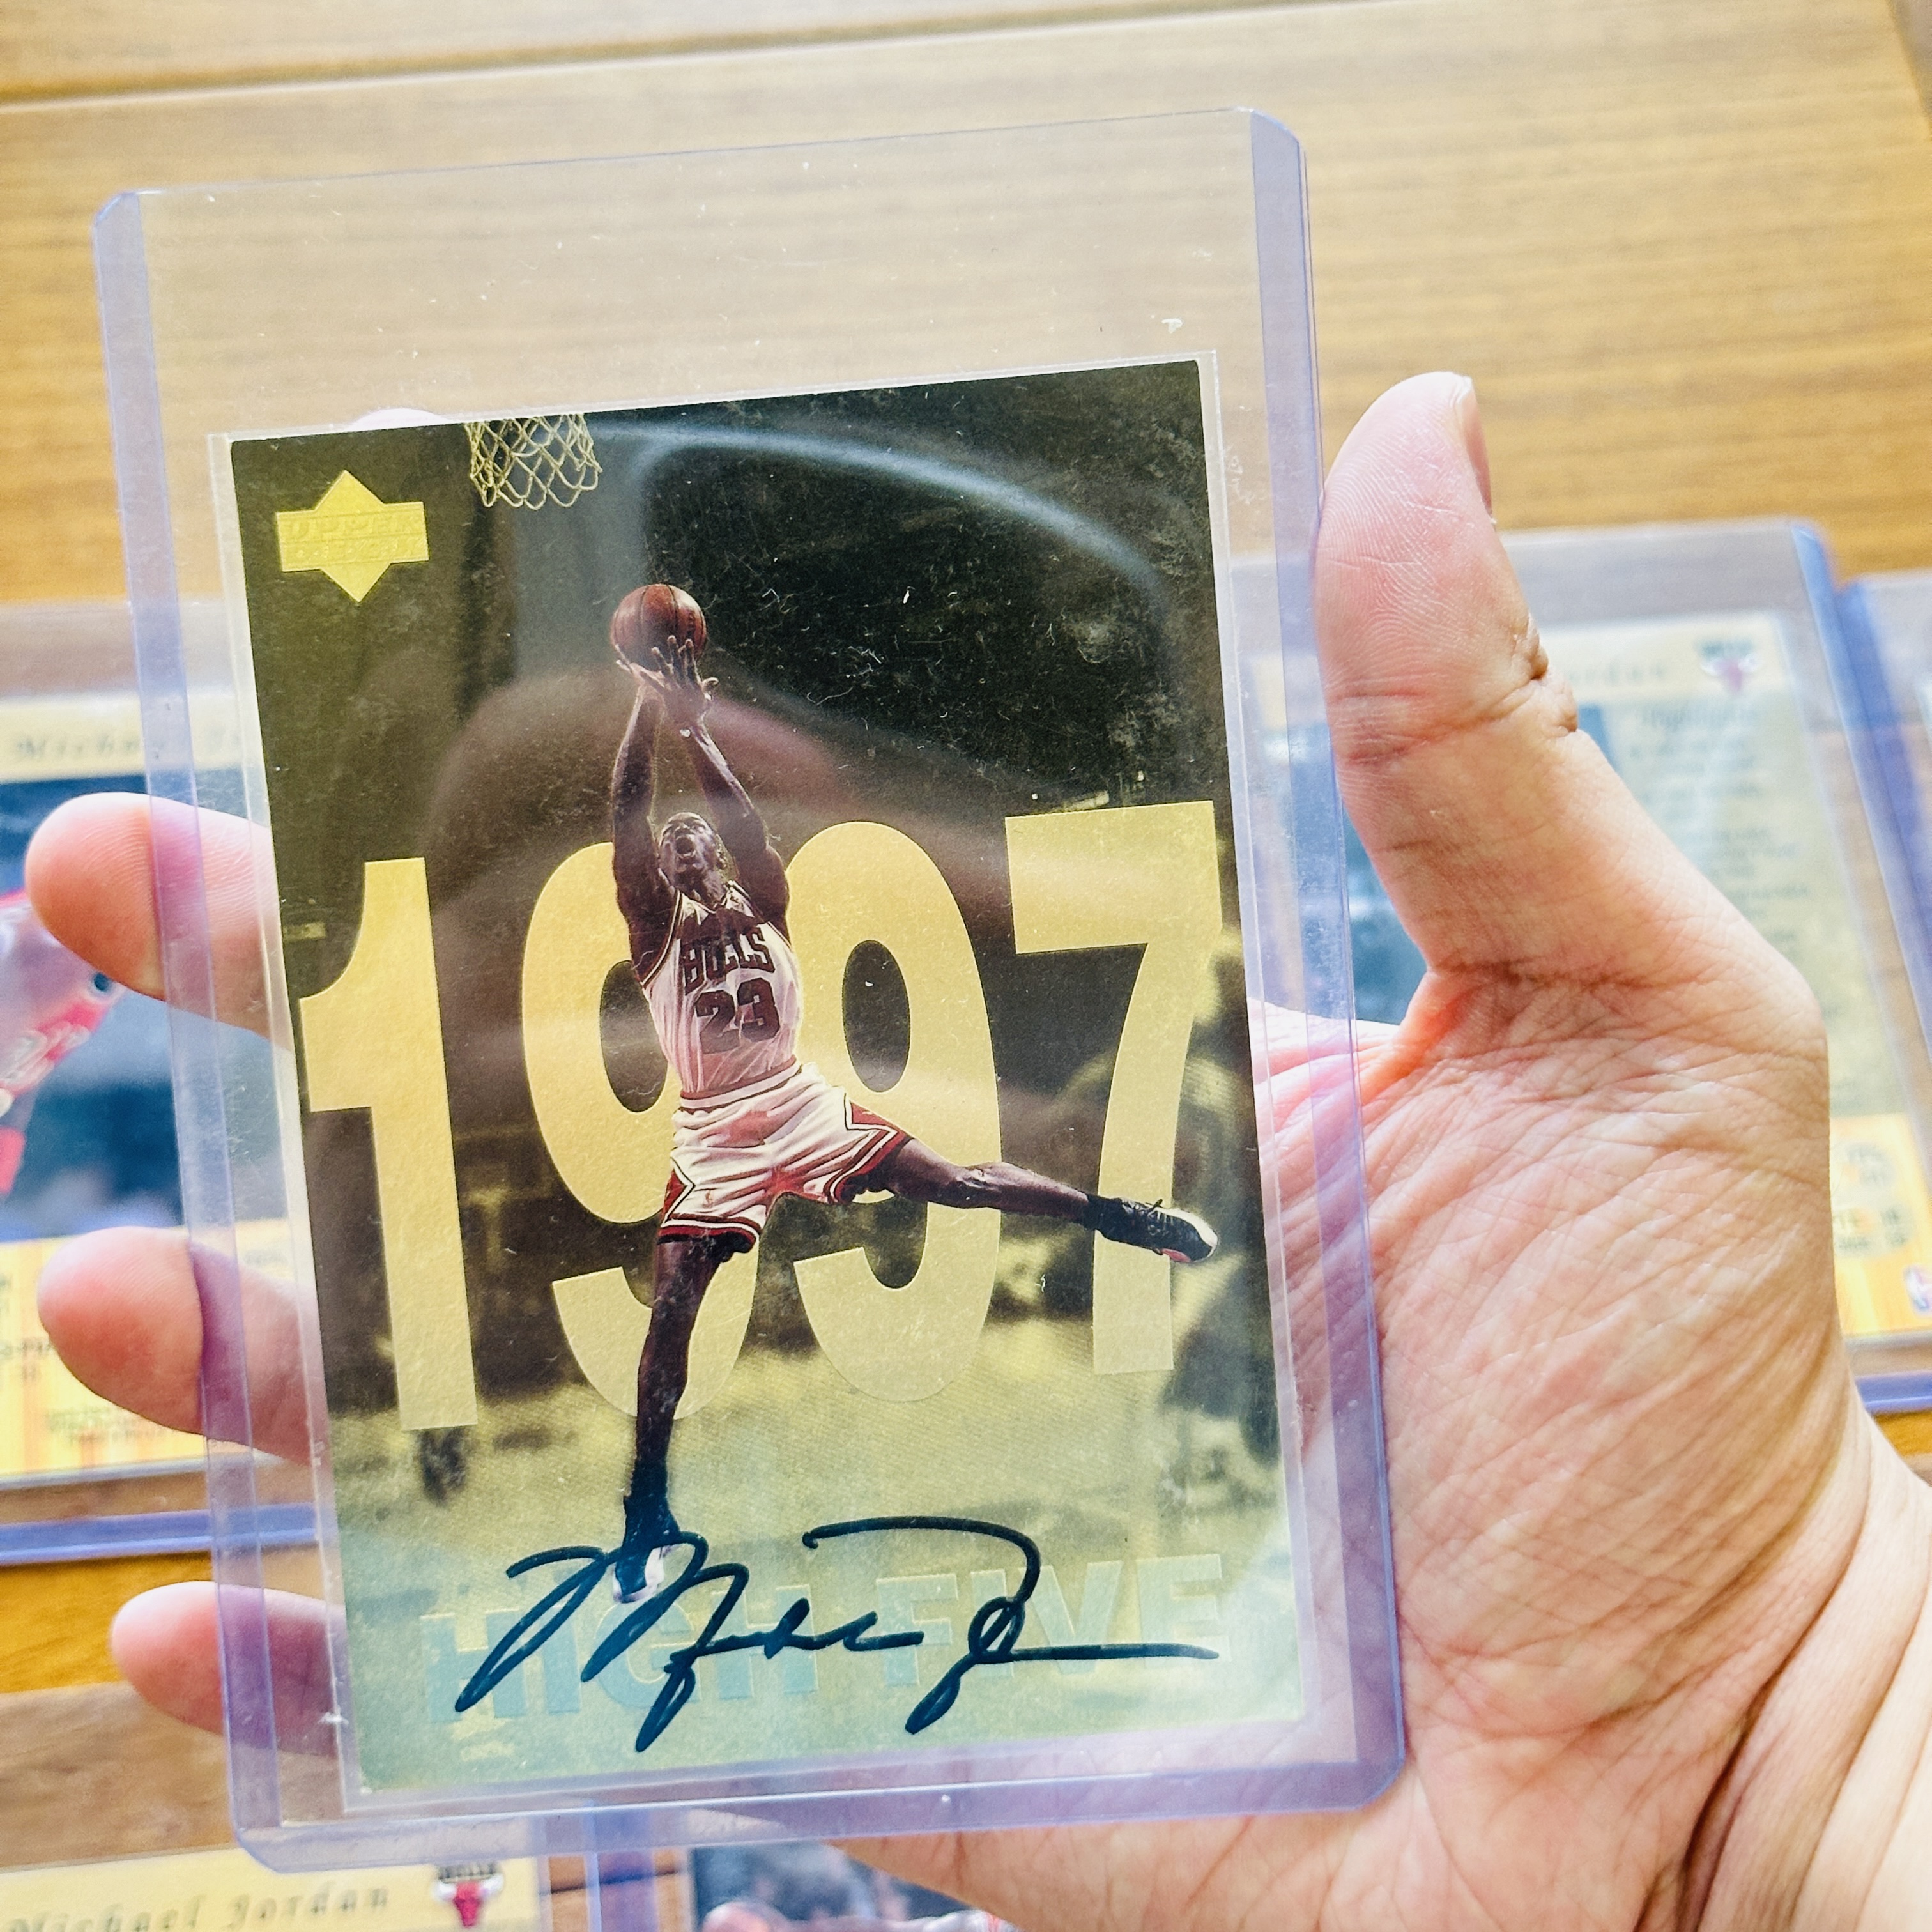 【金色传说代卖】1998 Upper Deck Legends Michael Jordan 迈克尔 乔丹 篮球之神 飞人 公牛 名宿 ud老卡 大卡 签字 印签 全套12张 超罕见【超人414】